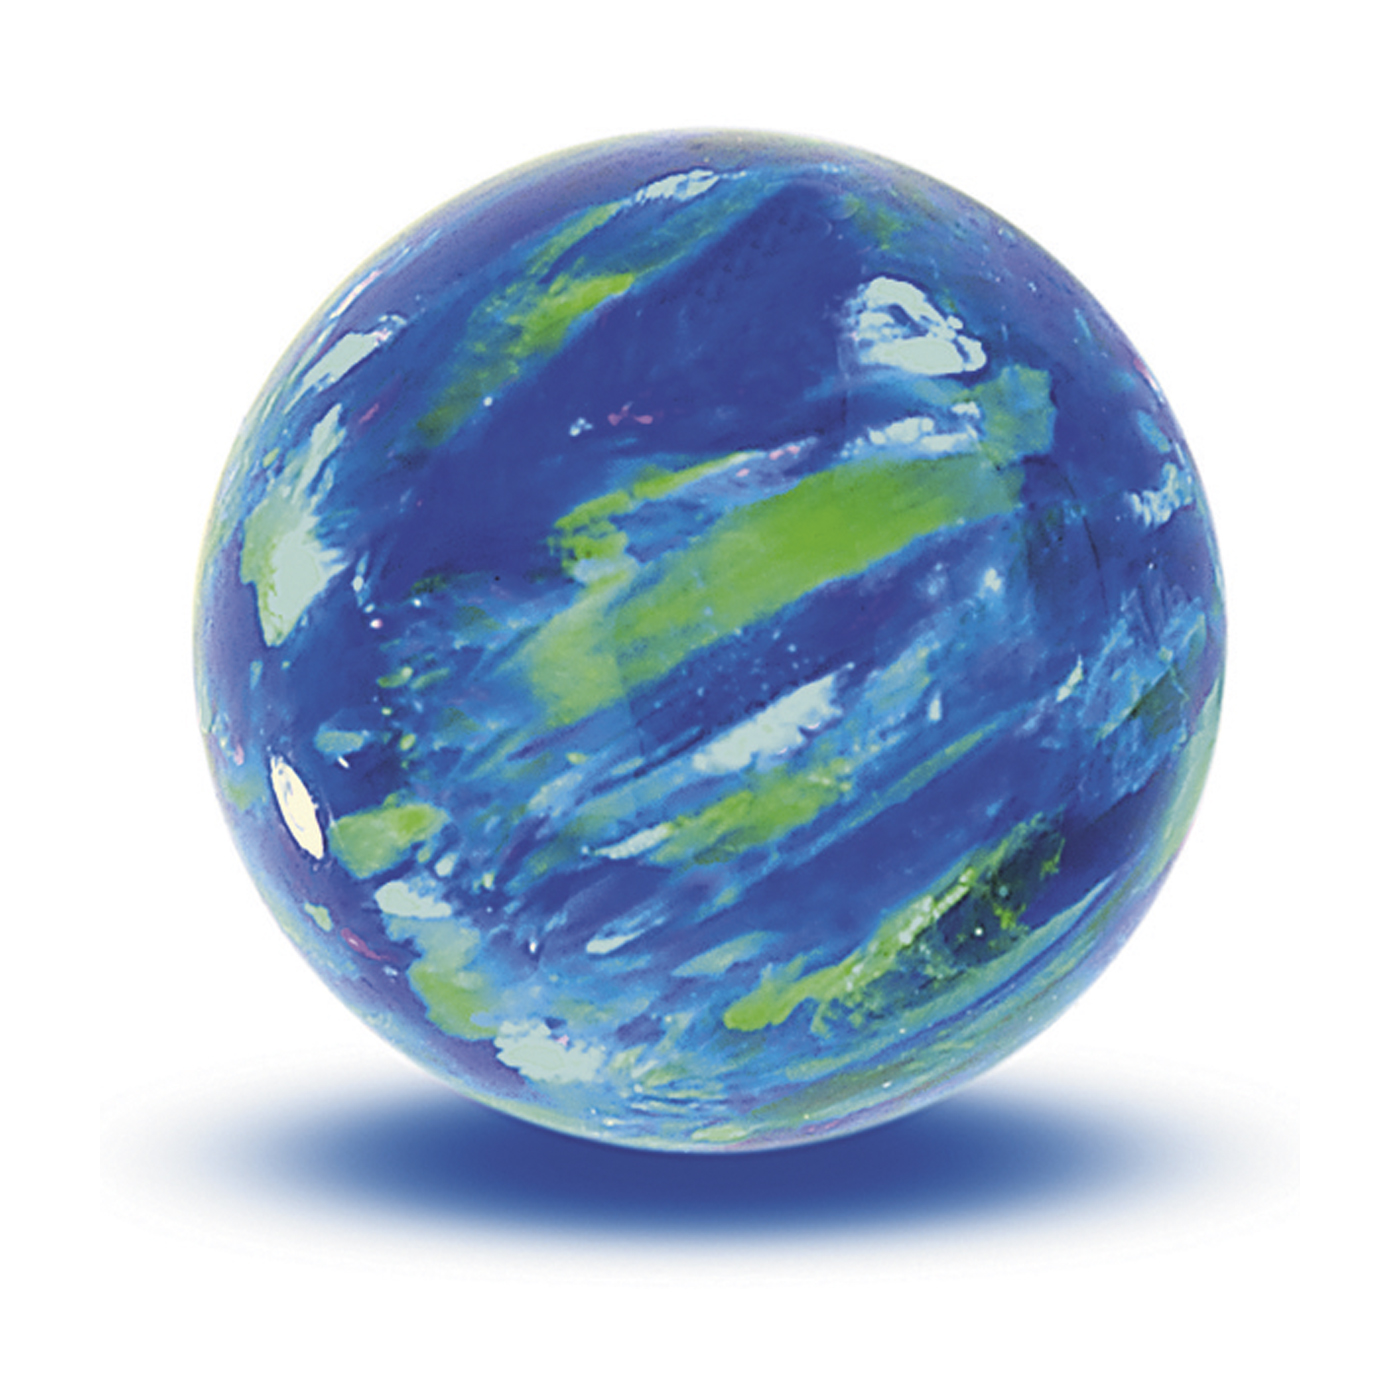 Opal Imitation Ball, Cyan, ø 8 mm, Spot Drilled - 1 piece